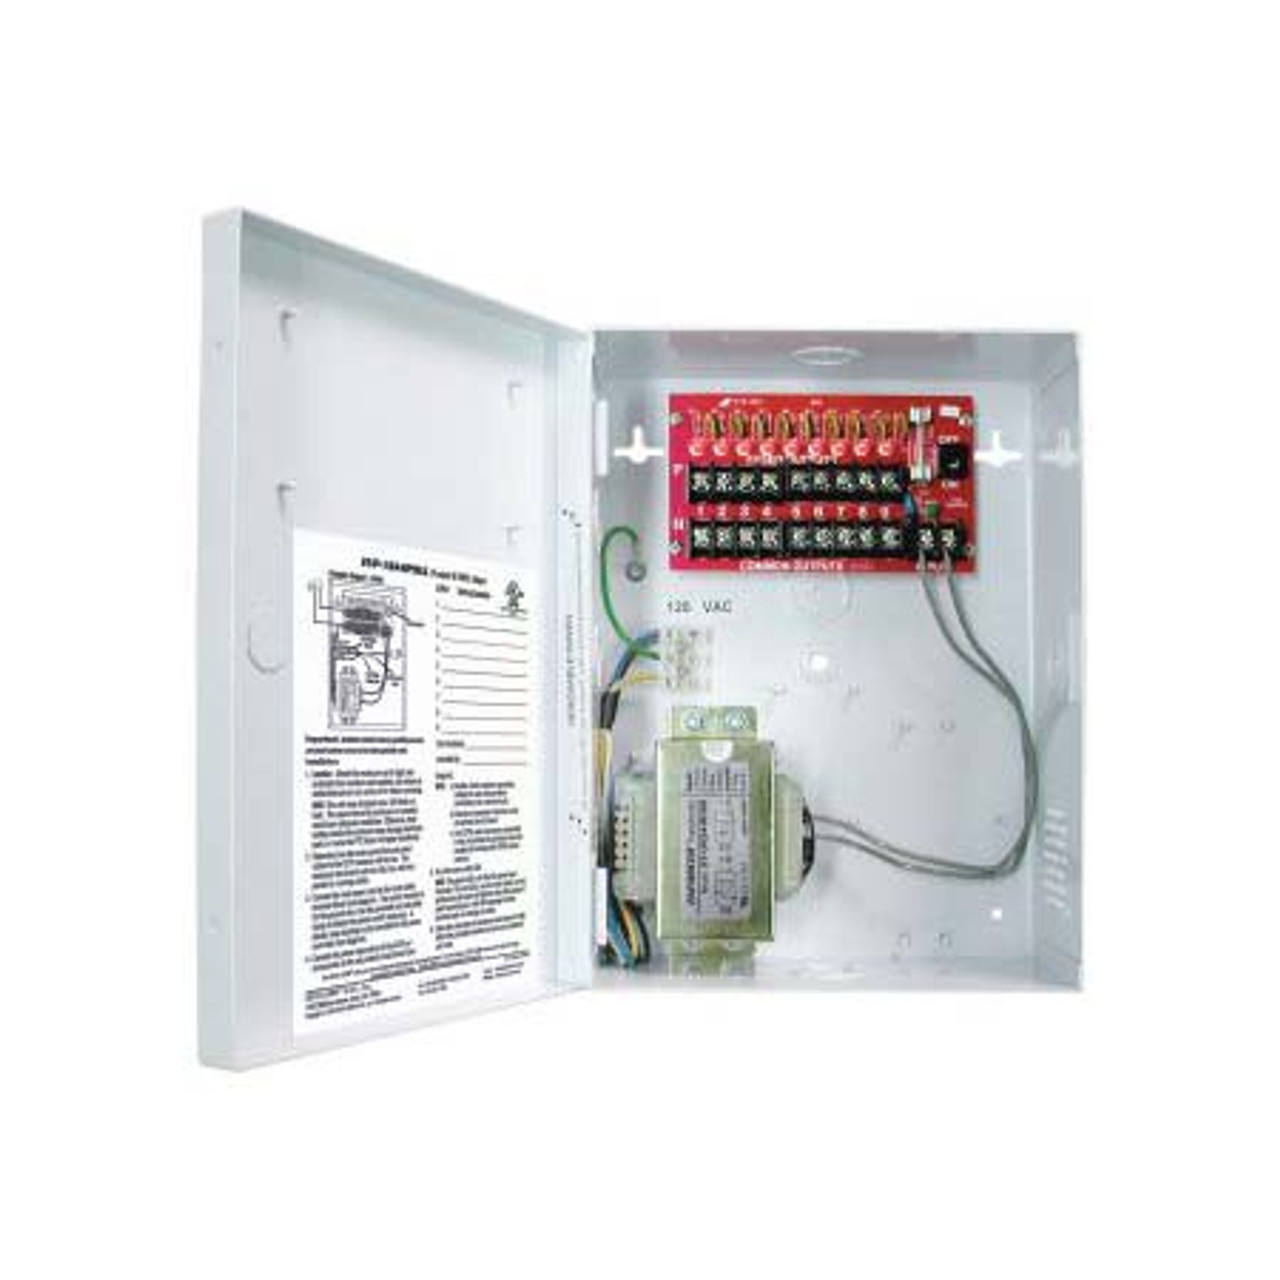 日東工業 PNL15-36-SP6JC アイセーバ標準電灯分電盤 :PNL15-36-SP6JC